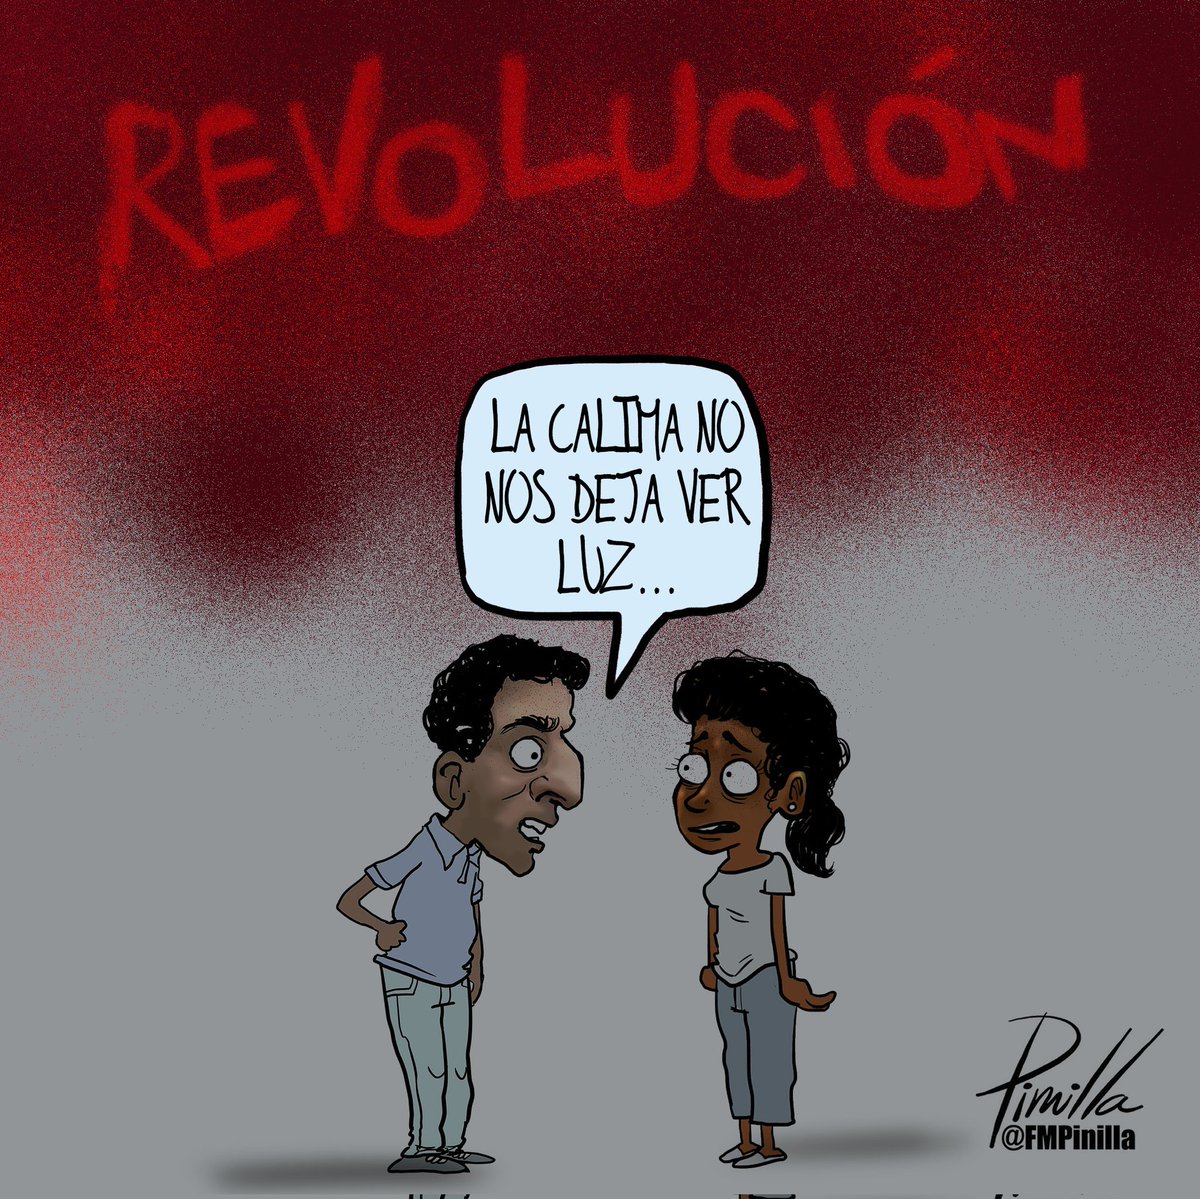 La calima no nos deja ver luz...
•
#caricatura para @elnacionalweb 
•
#caricatura #cartoon #Venezuela #venezuela🇻🇪 #venezolanos #politicalcartoon